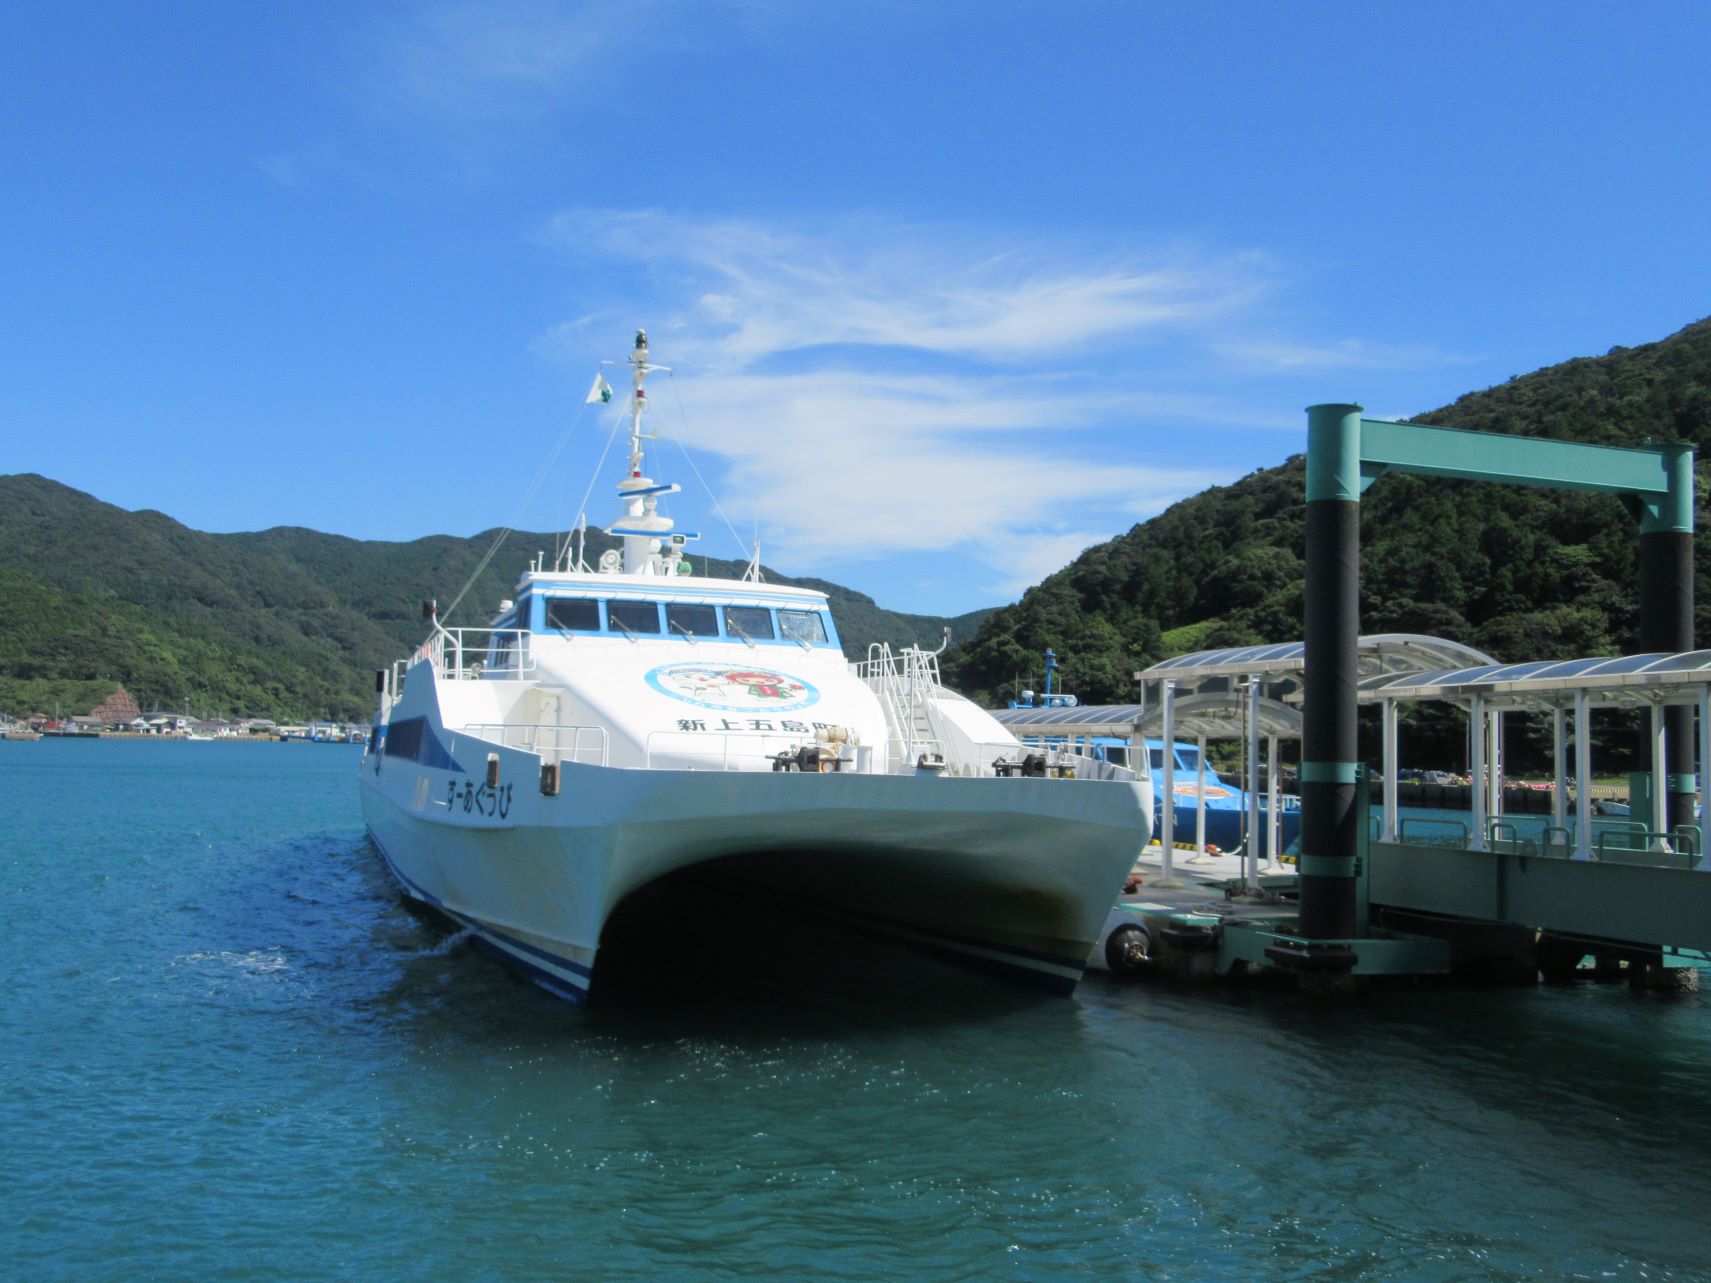 長崎県南松浦郡新上五島町の鯛ノ浦港にとまっている五島産業汽船の高速船『びっぐあーす』。